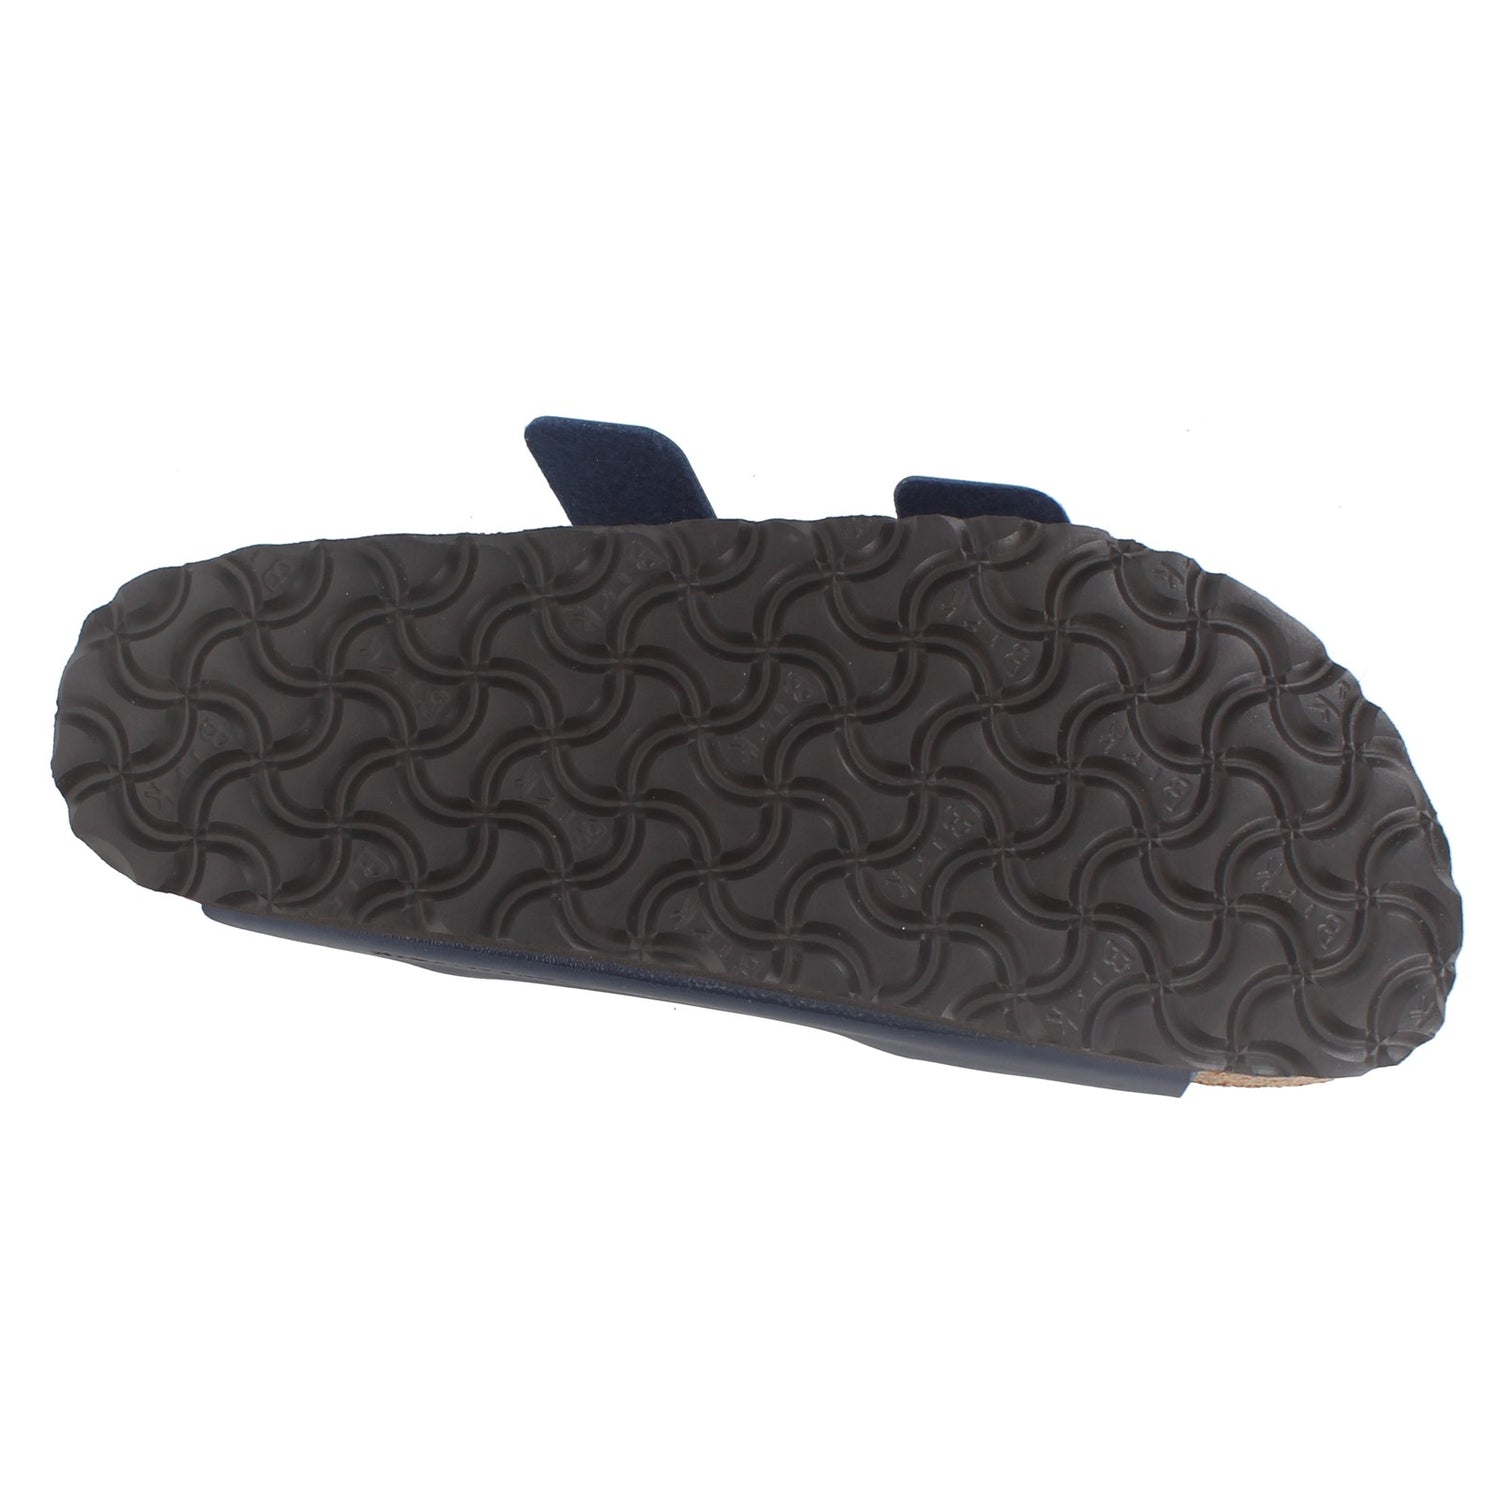 Peltz Shoes  Women's Birkenstock Arizona Birk-Flor Sandals - Narrow Width NAVY 51063 N